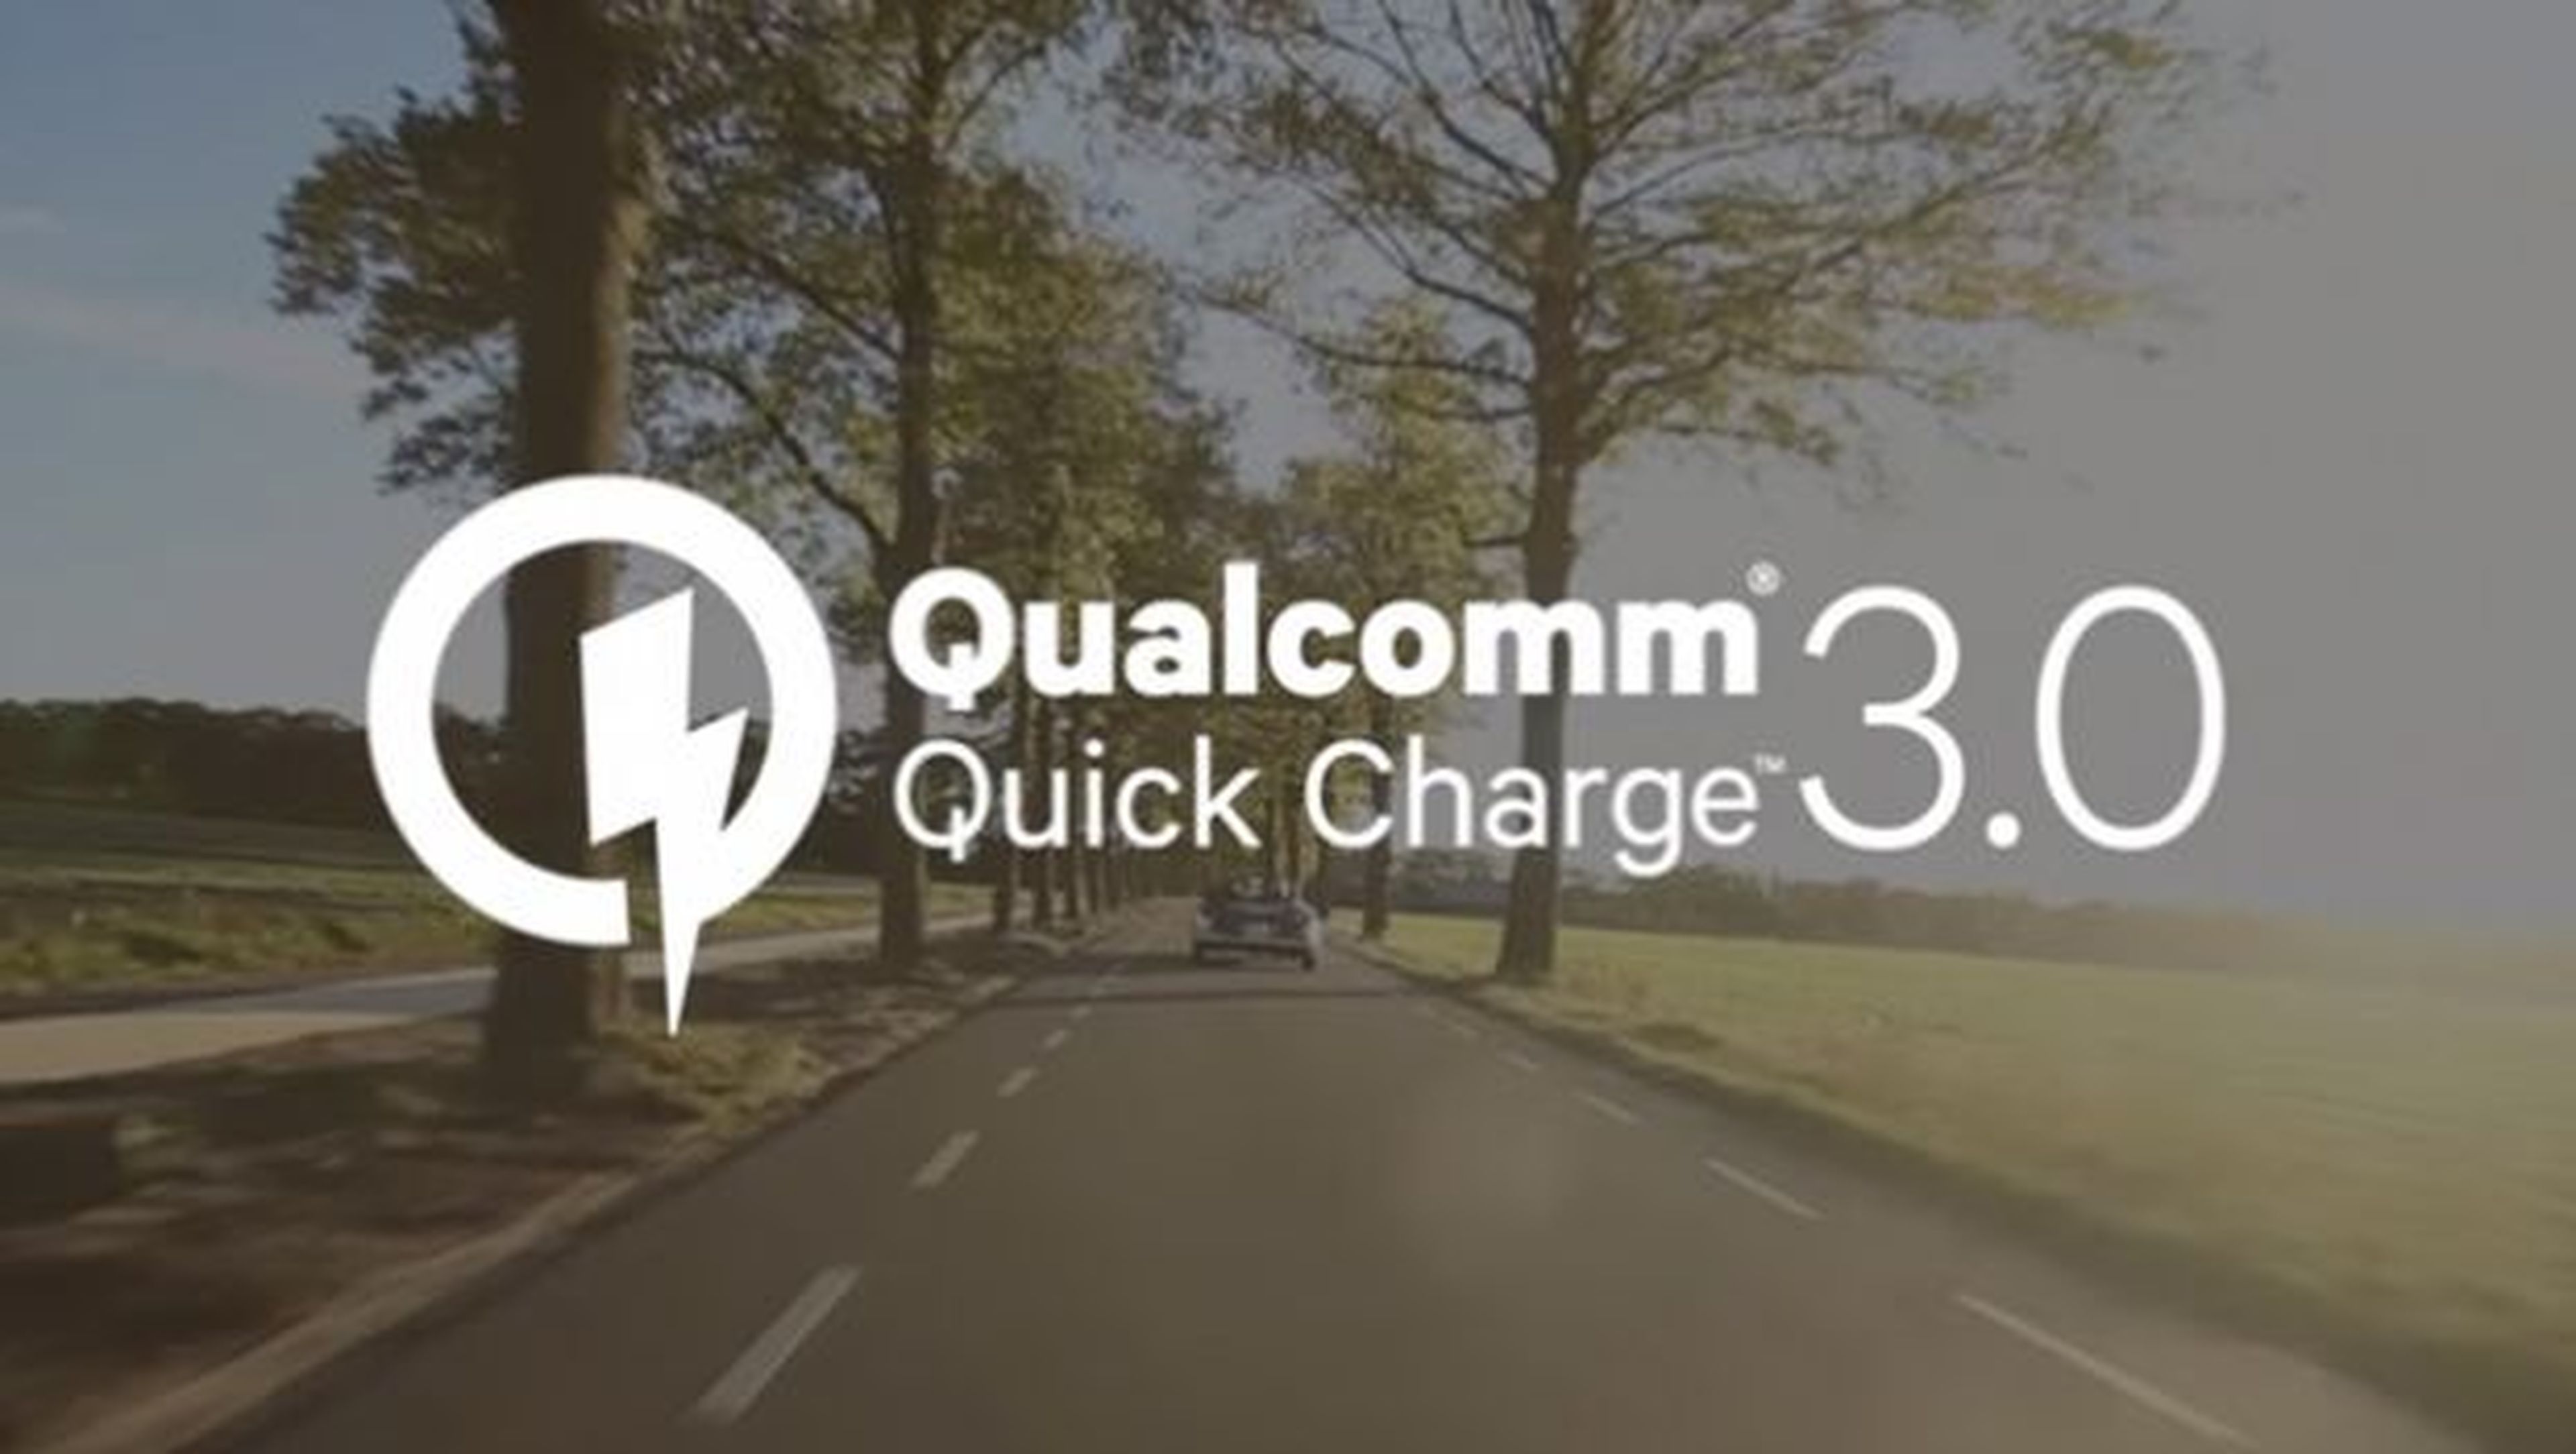 Qualcomm Quick Charge 3.0, tu batería al 80% en 35 minutos